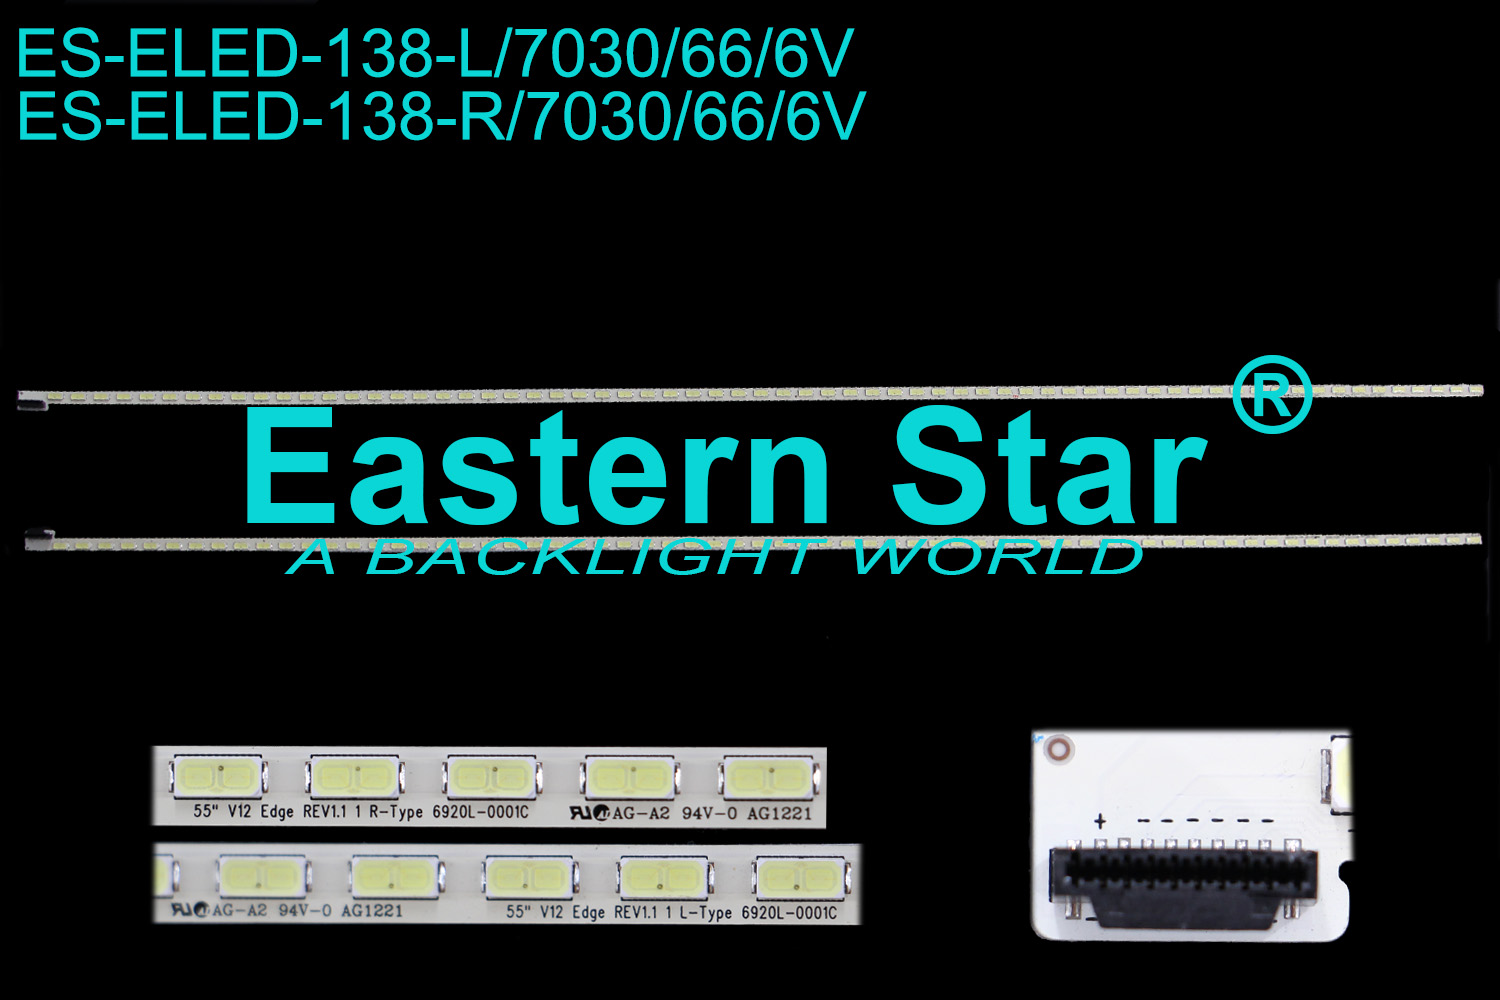 ES-ELED-138 ELED/EDGE TV backlight use for Lg 55''  L: 55"V12 Edge REV1.1 1 L-Type 6920-0001C  R: 55"V12 Edge REV1.1 1 R-Type 6920-0001C (2)